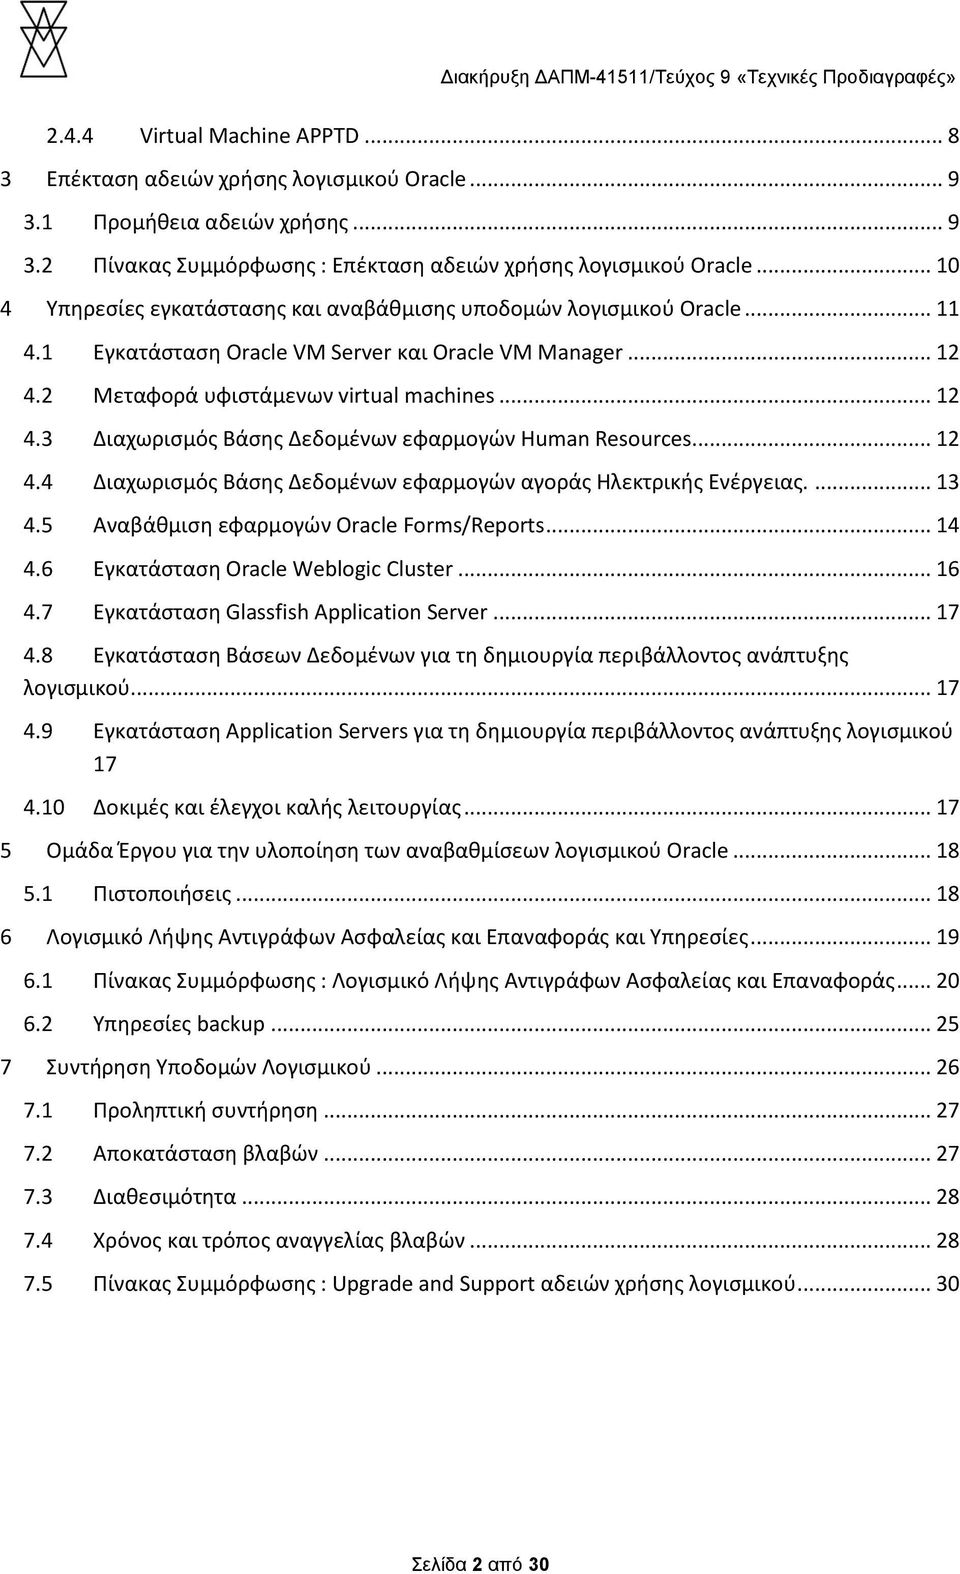 .. 12 4.4 Διαχωρισμός Βάσης Δεδομένων εφαρμογών αγοράς Ηλεκτρικής Ενέργειας.... 13 4.5 Αναβάθμιση εφαρμογών Oracle Forms/Reports... 14 4.6 Εγκατάσταση Oracle Weblogic Cluster... 16 4.